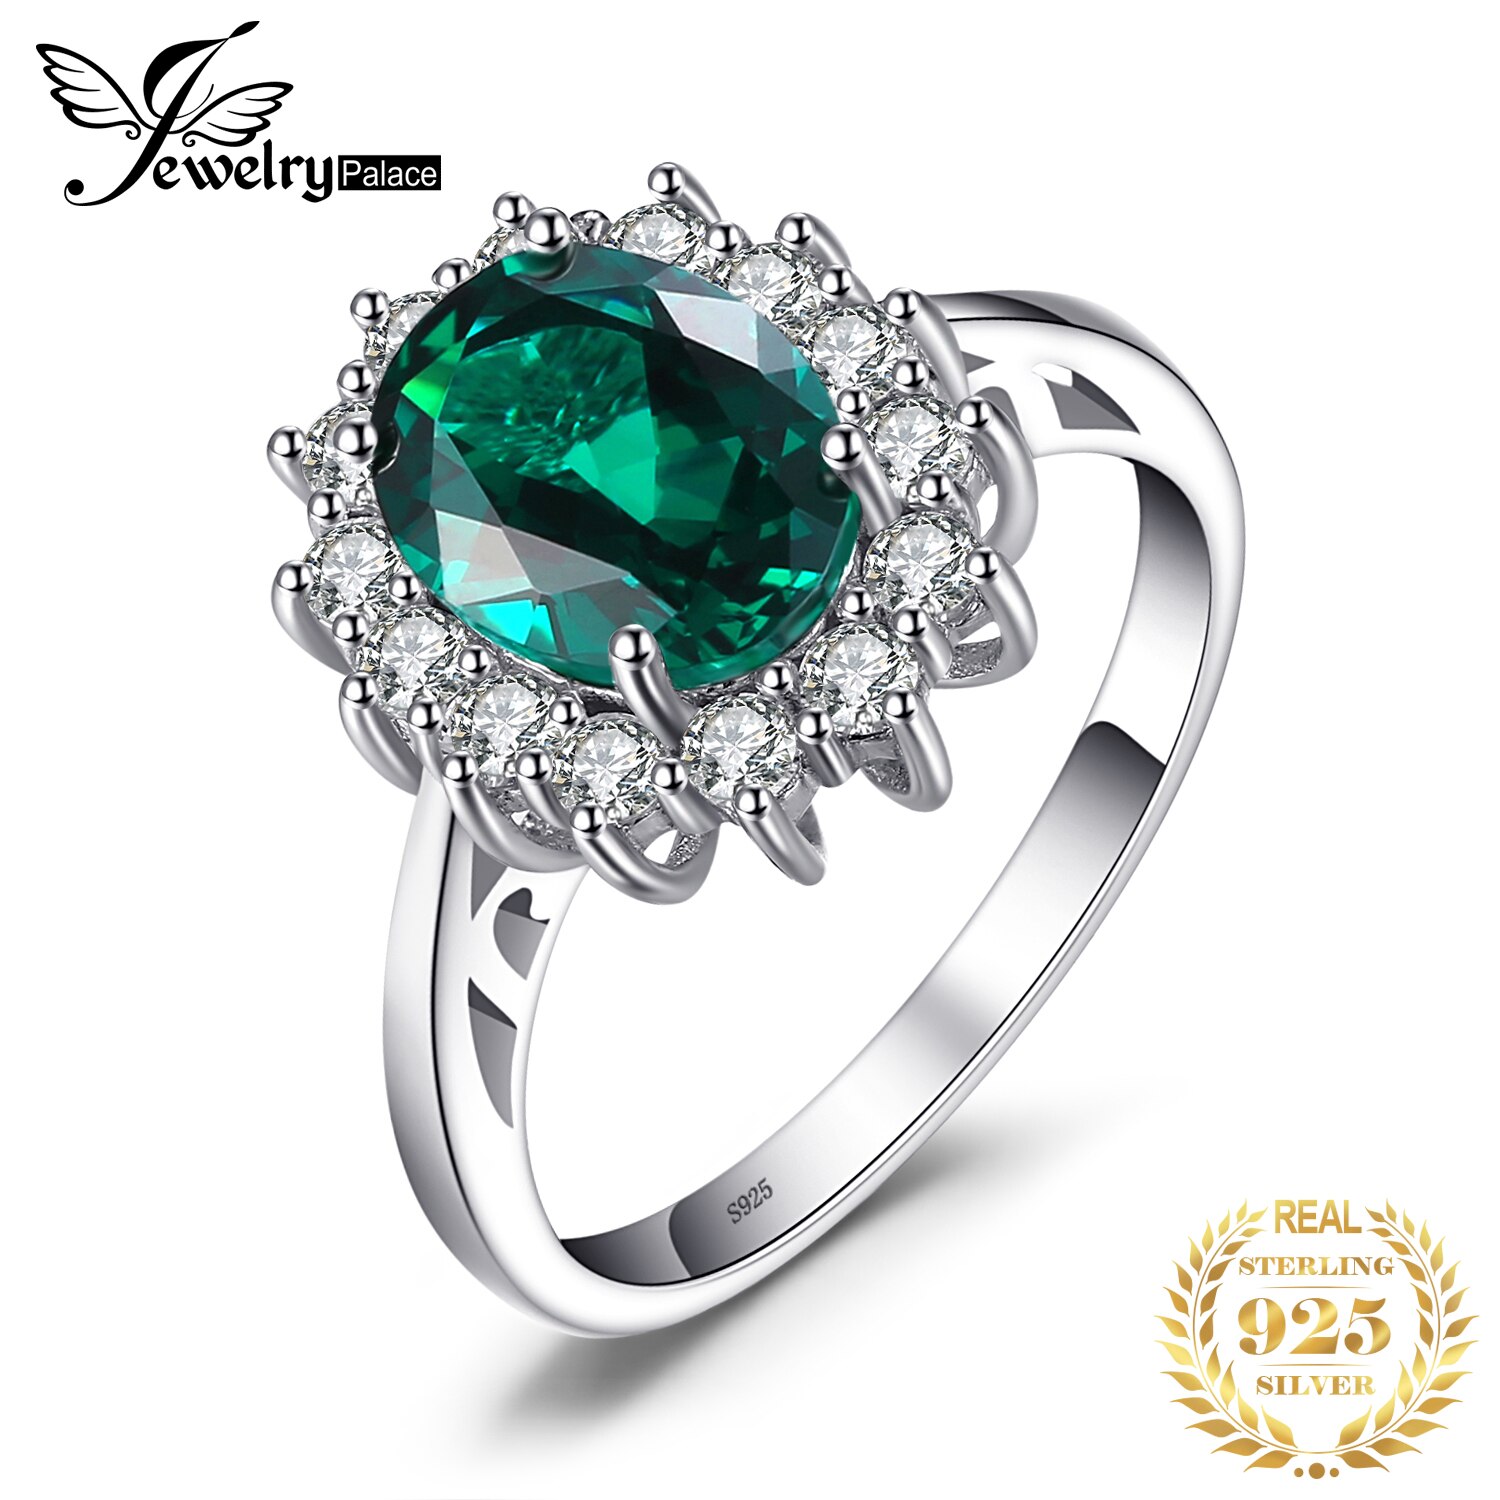 Jewpalace Prinses Diana Gesimuleerde Emerald Ring 925 Sterling Zilveren Ringen Voor Vrouwen Engagement Ring Zilver 925 Edelstenen Sieraden